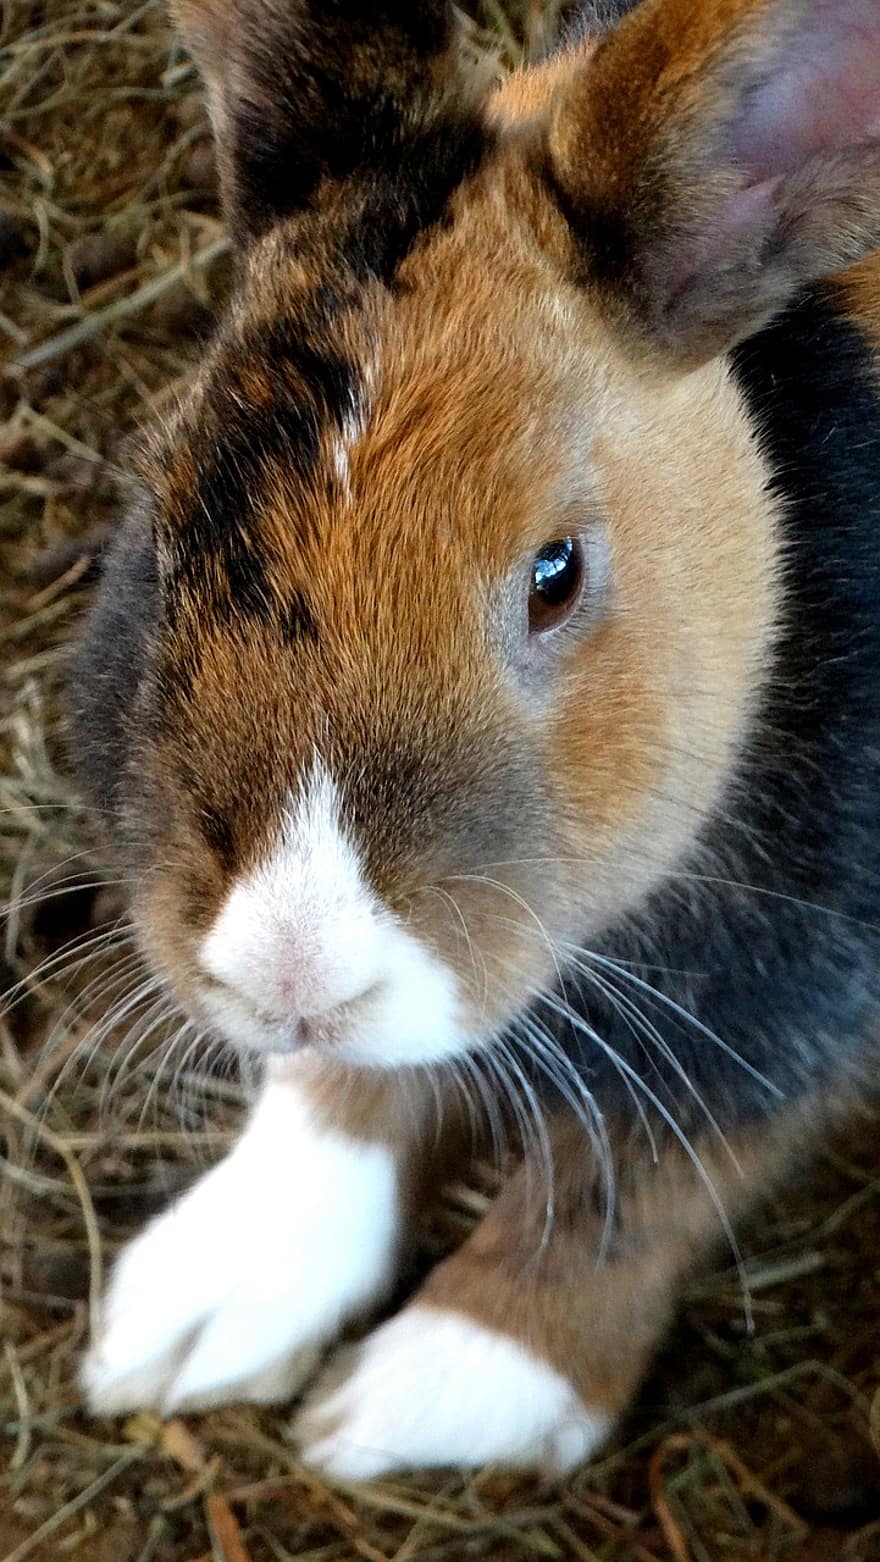 กระต่าย, กระต่ายแคระ, ยาวหู, เลี้ยงลูกด้วยนม, ที่ใช้ฟันแทะ, สัตว์, น่ารัก, ธรรมชาติ, กระต่ายอีสเตอร์, อีสเตอร์, หู